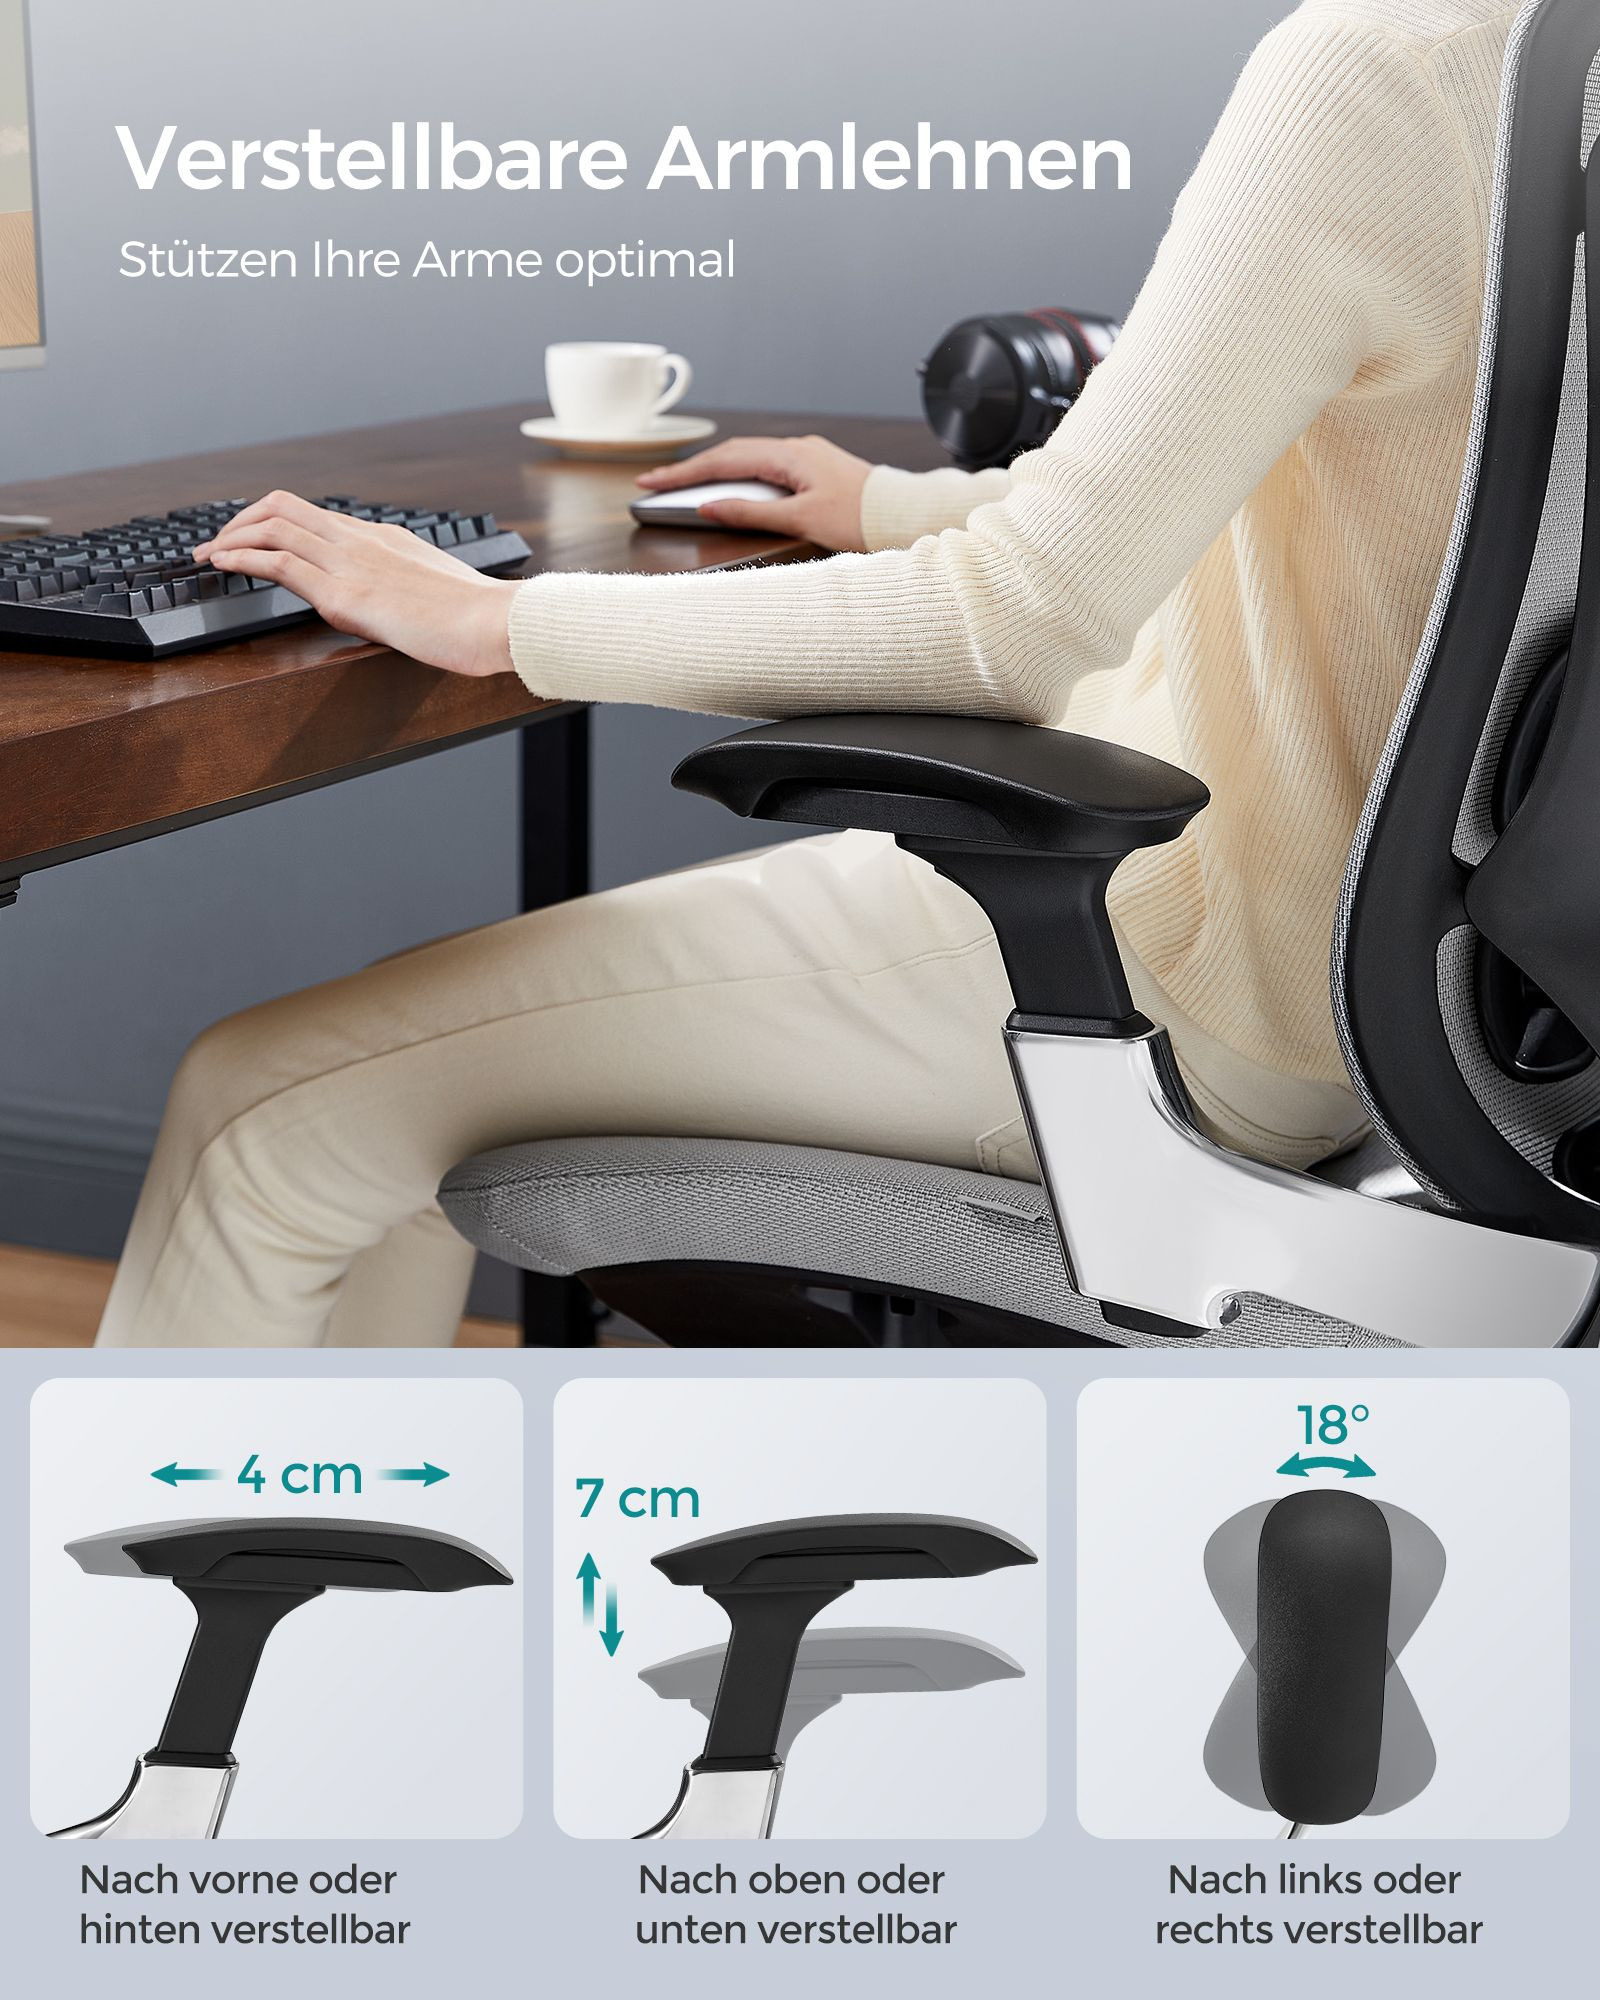 Kancelářská židle OBN068G01